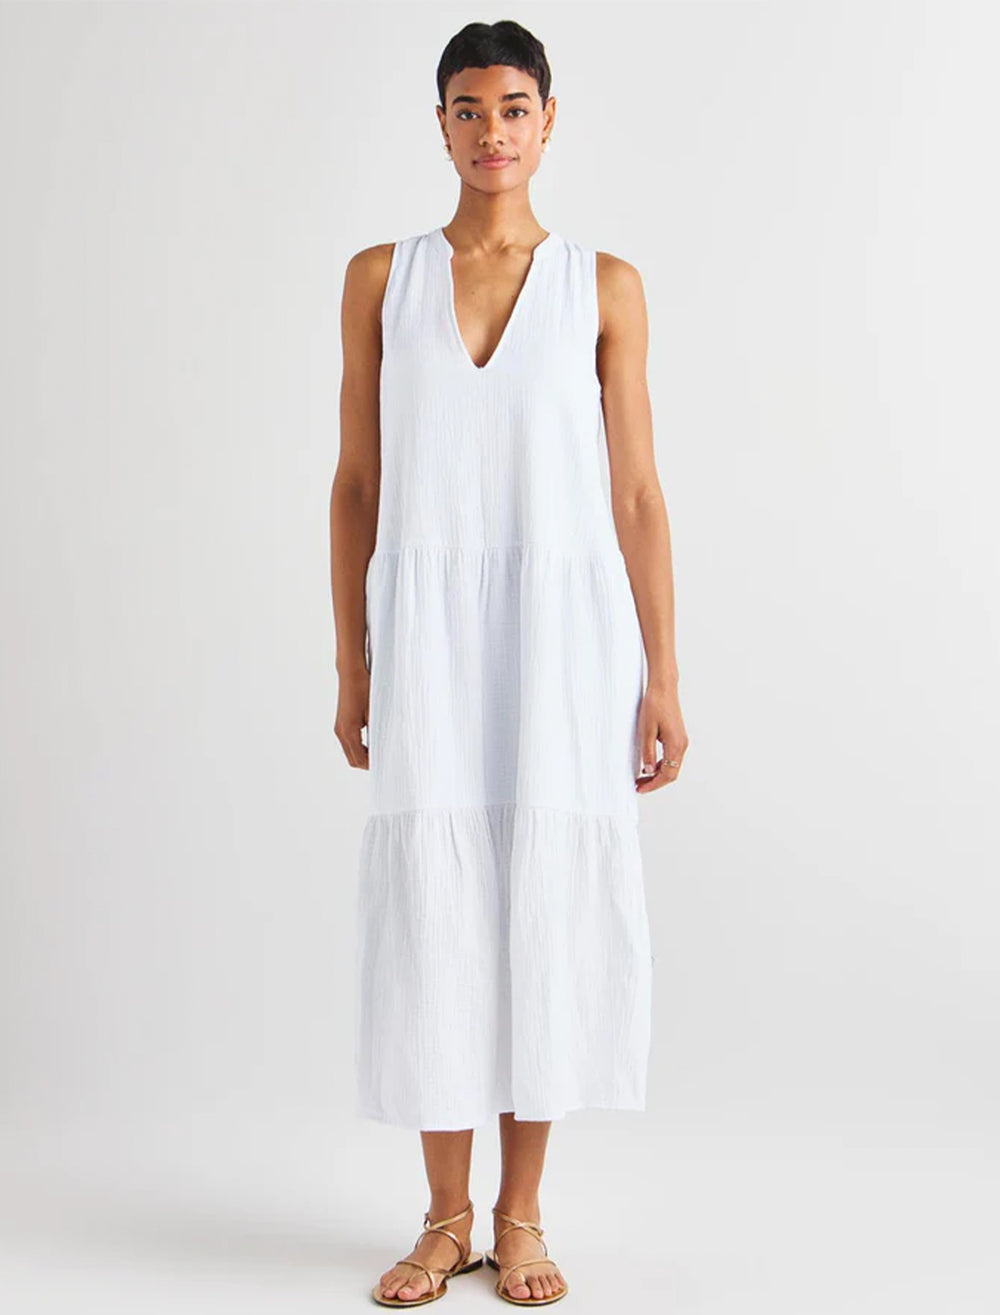 Model wearing Splendid's sumner gauze maxi dress in white.